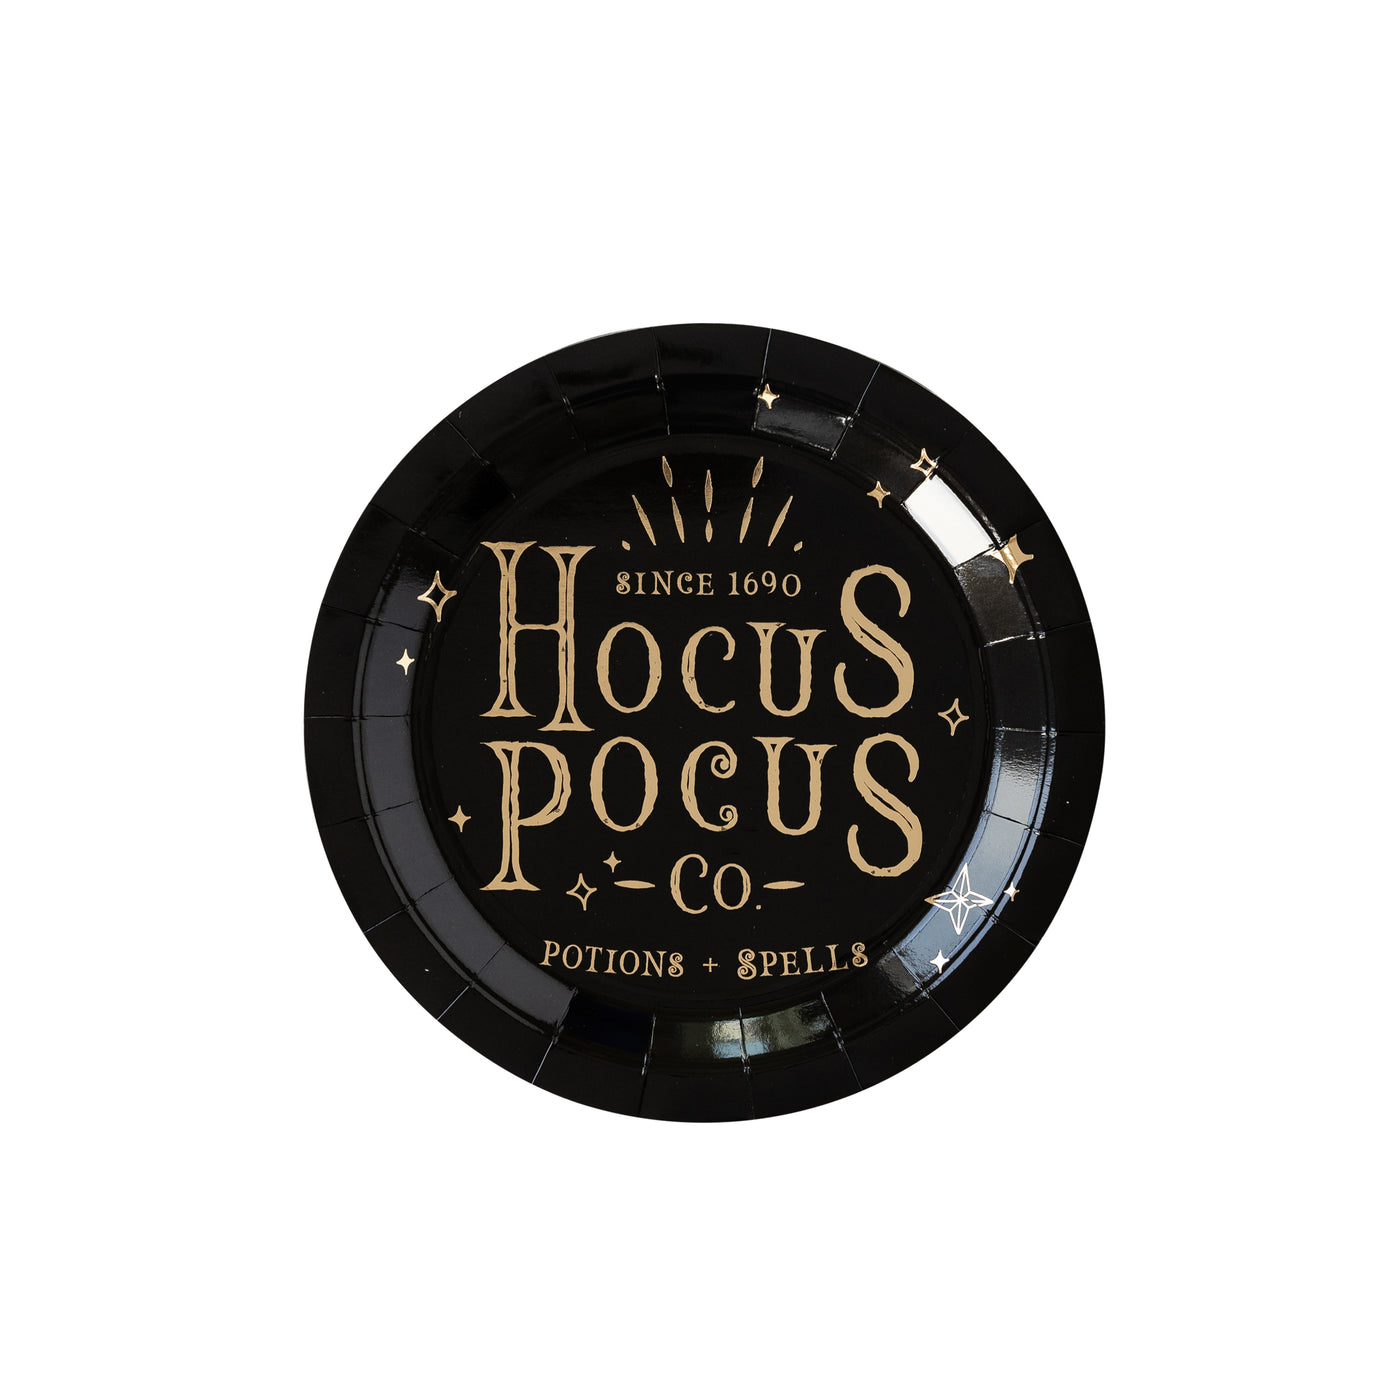 Hocus Pocus Plates